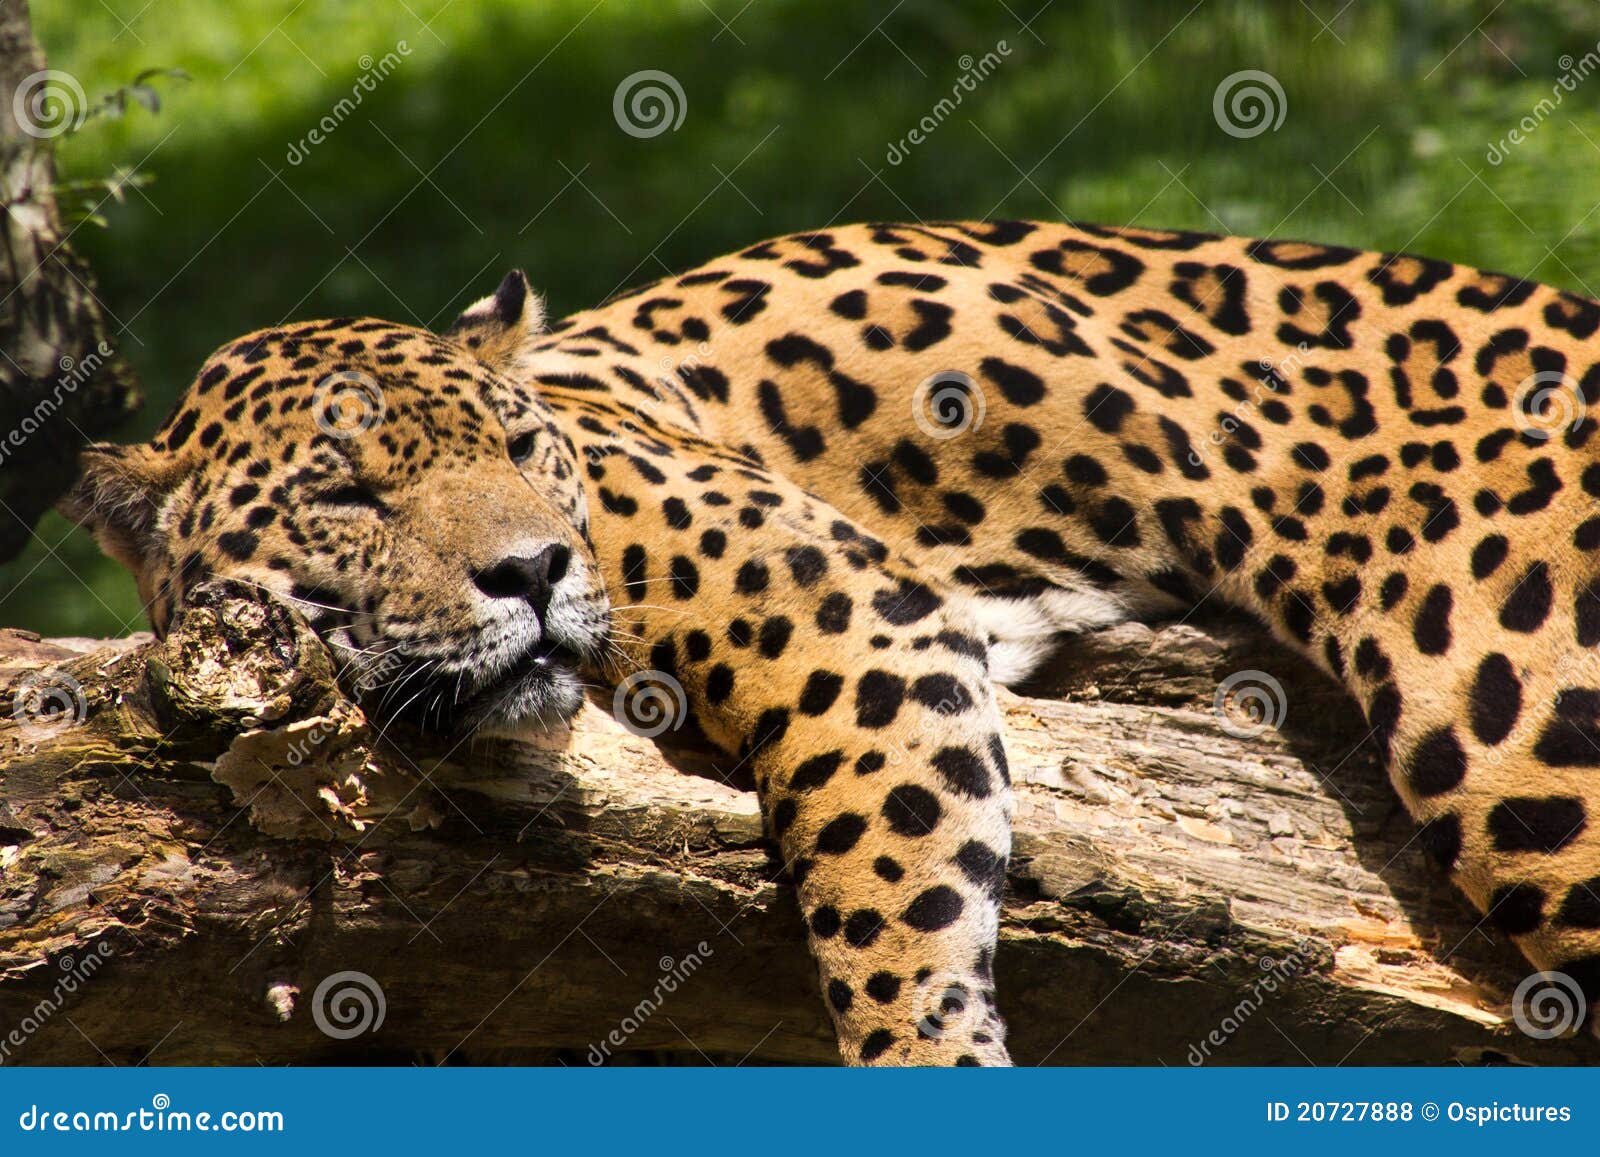 jaguar relaxing